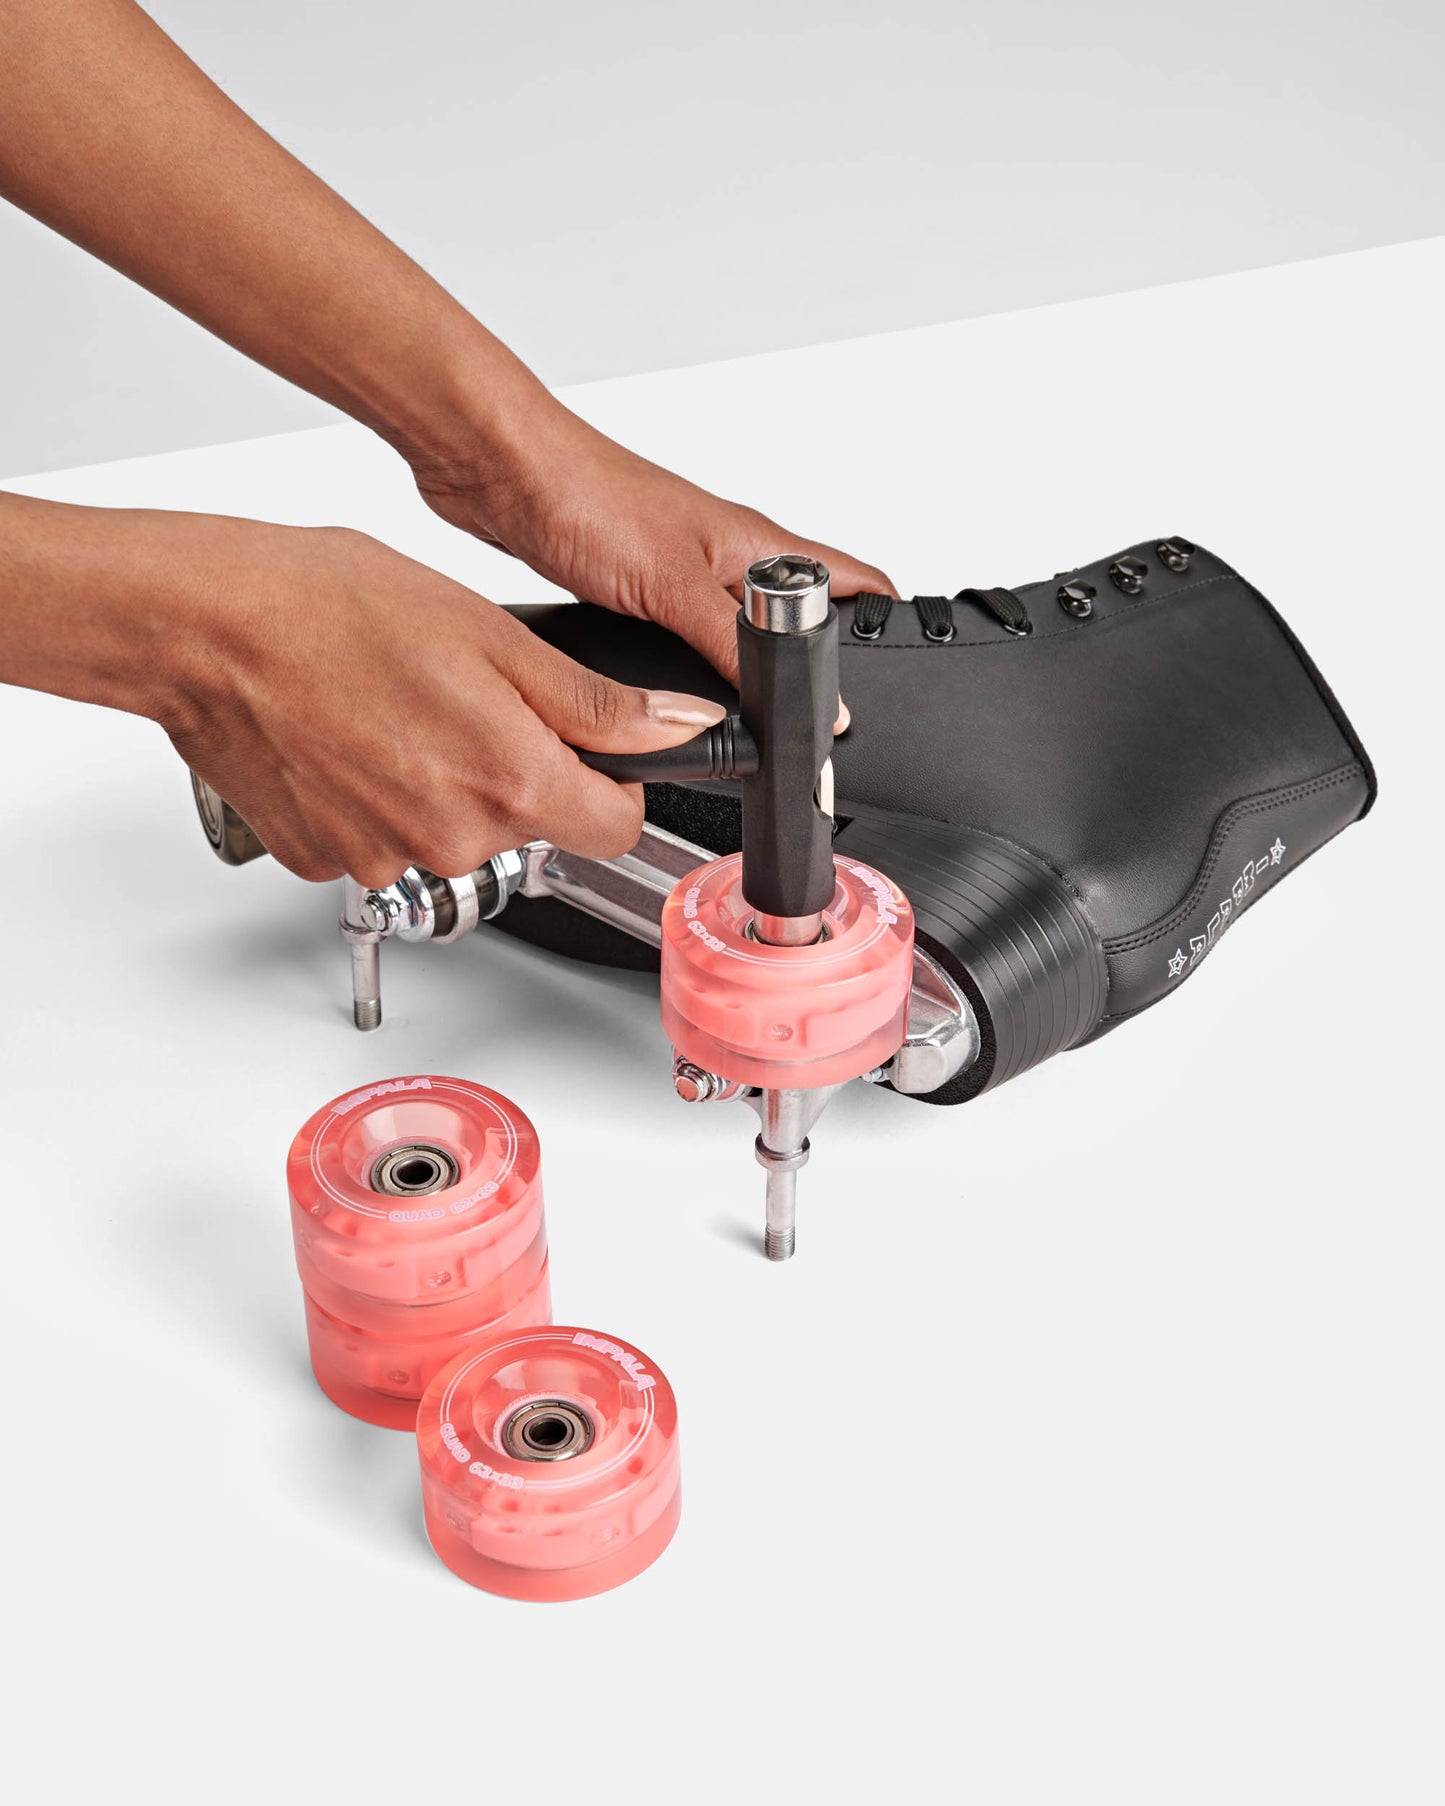 Installing pink LED Light up transparent impala roller skate wheels 